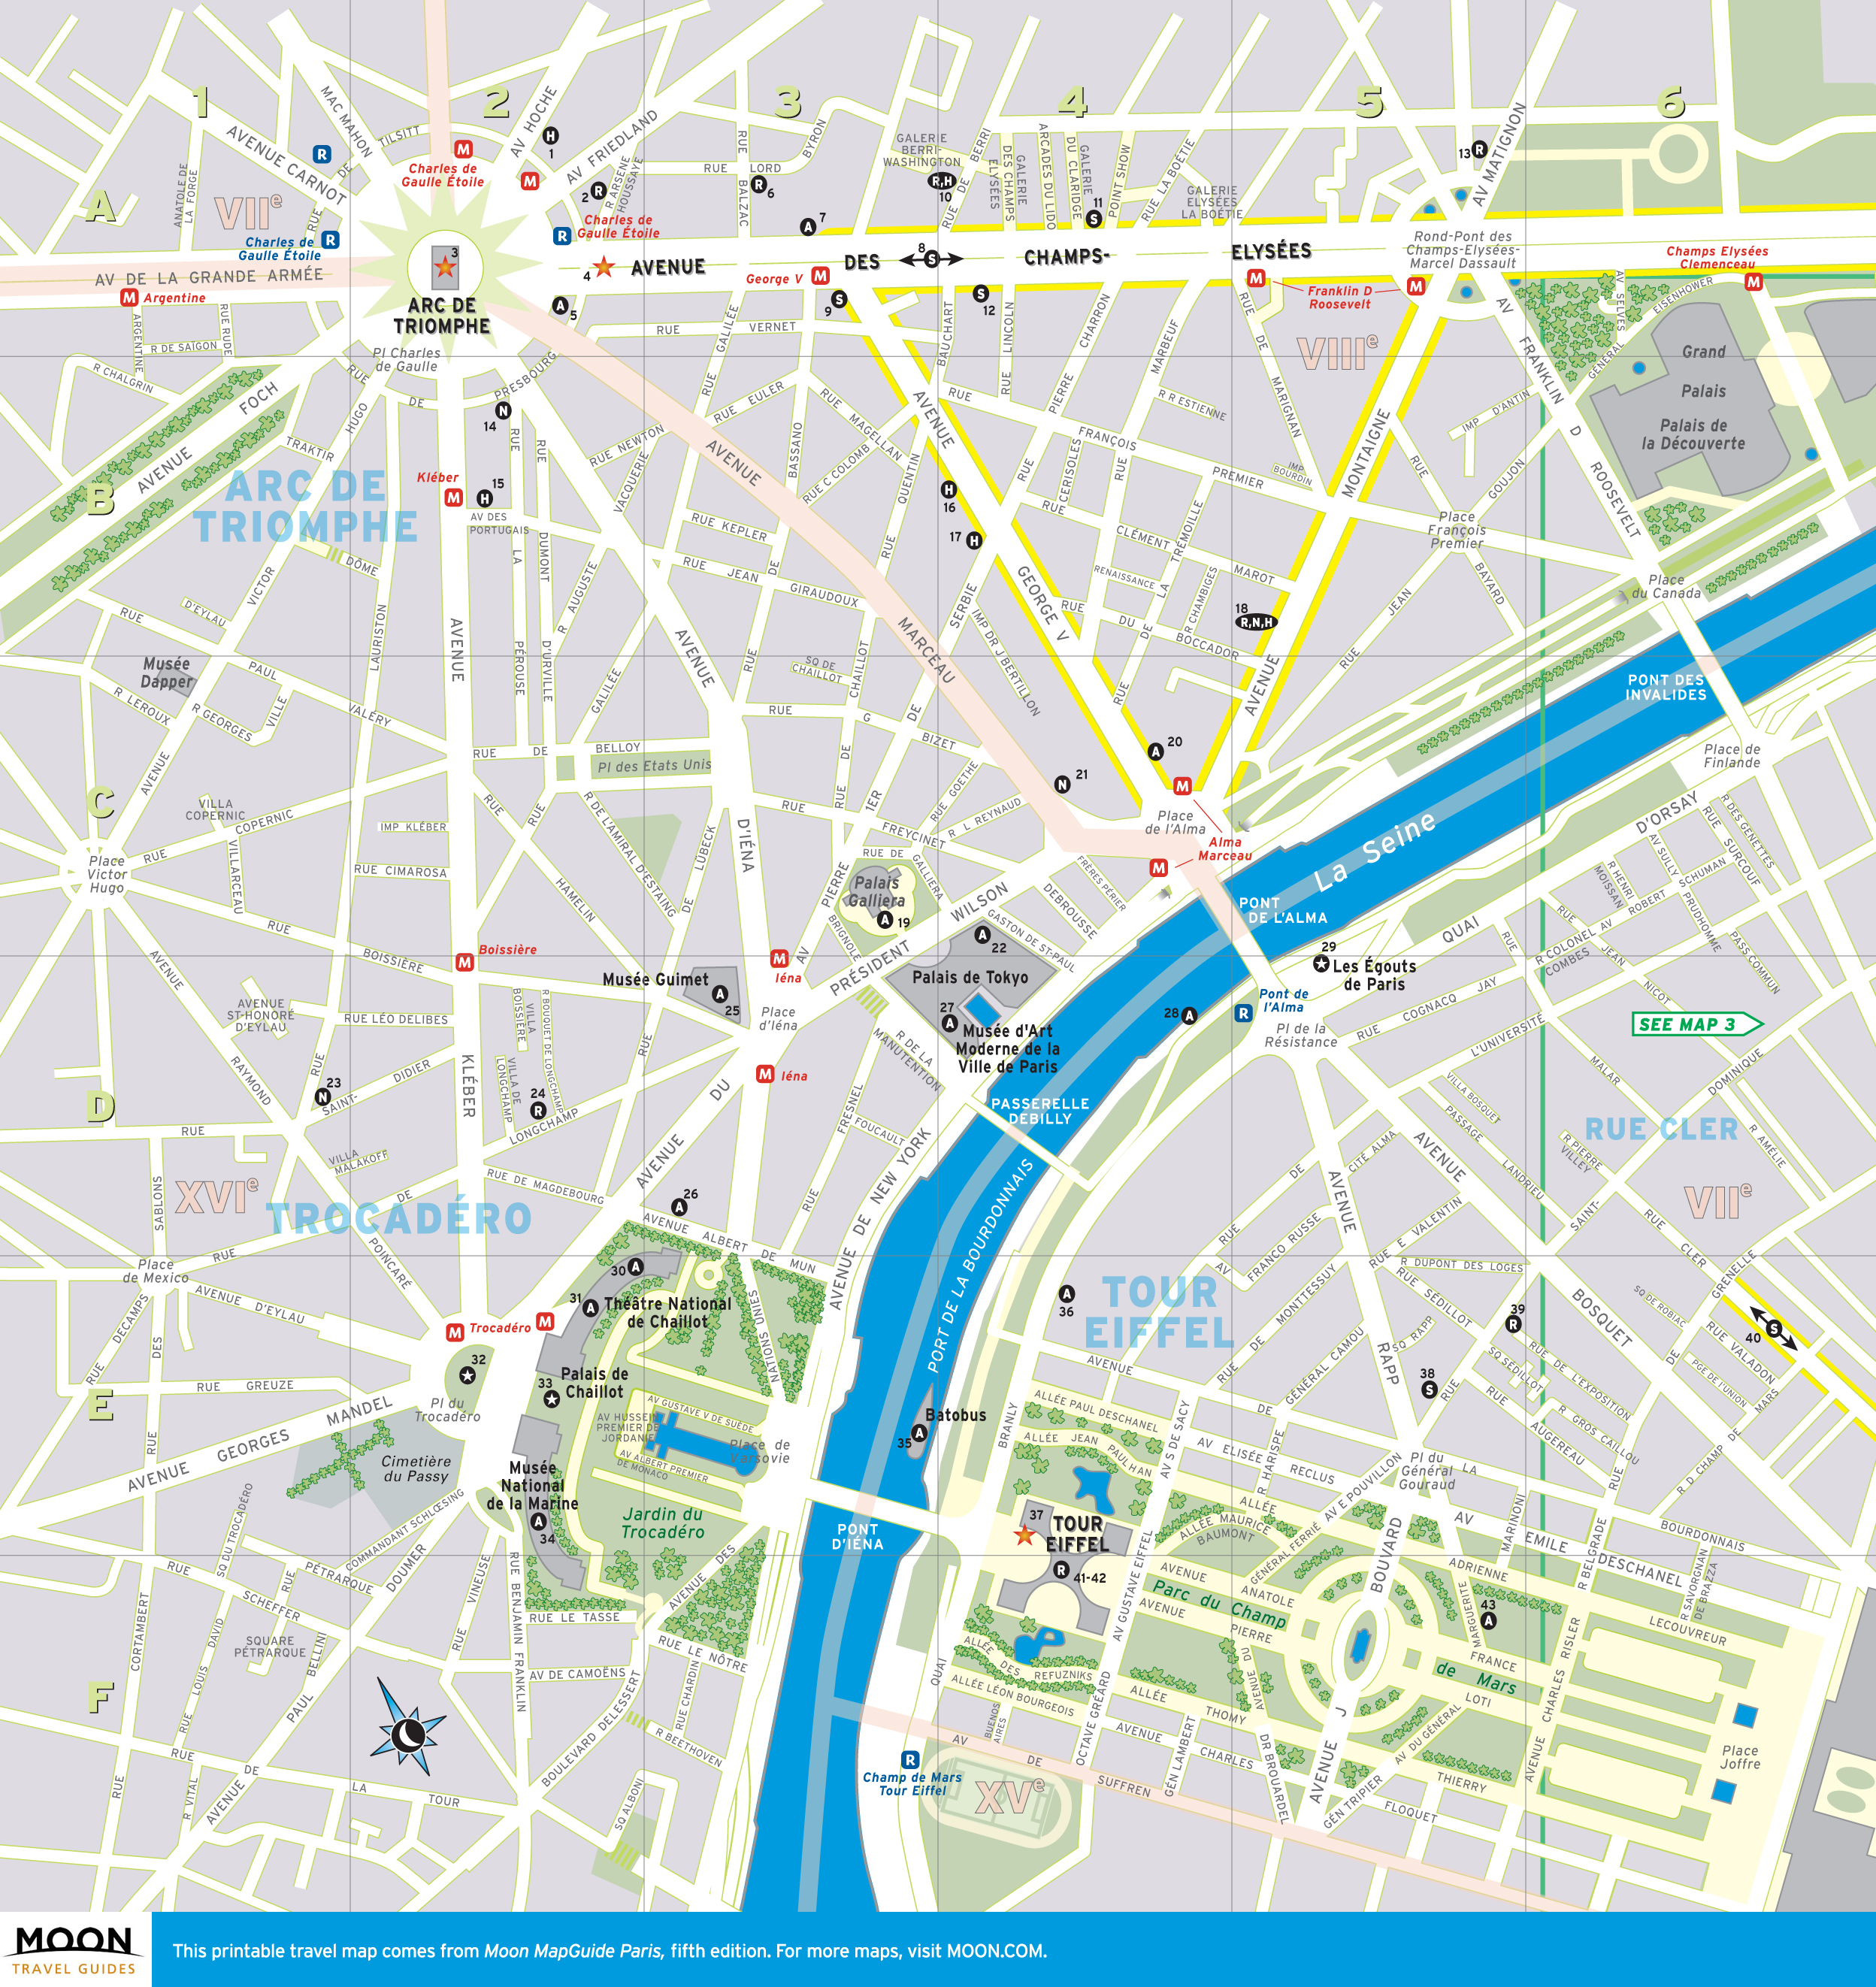 6 Best Images of Printable De Paris Paris France Map, Paper City